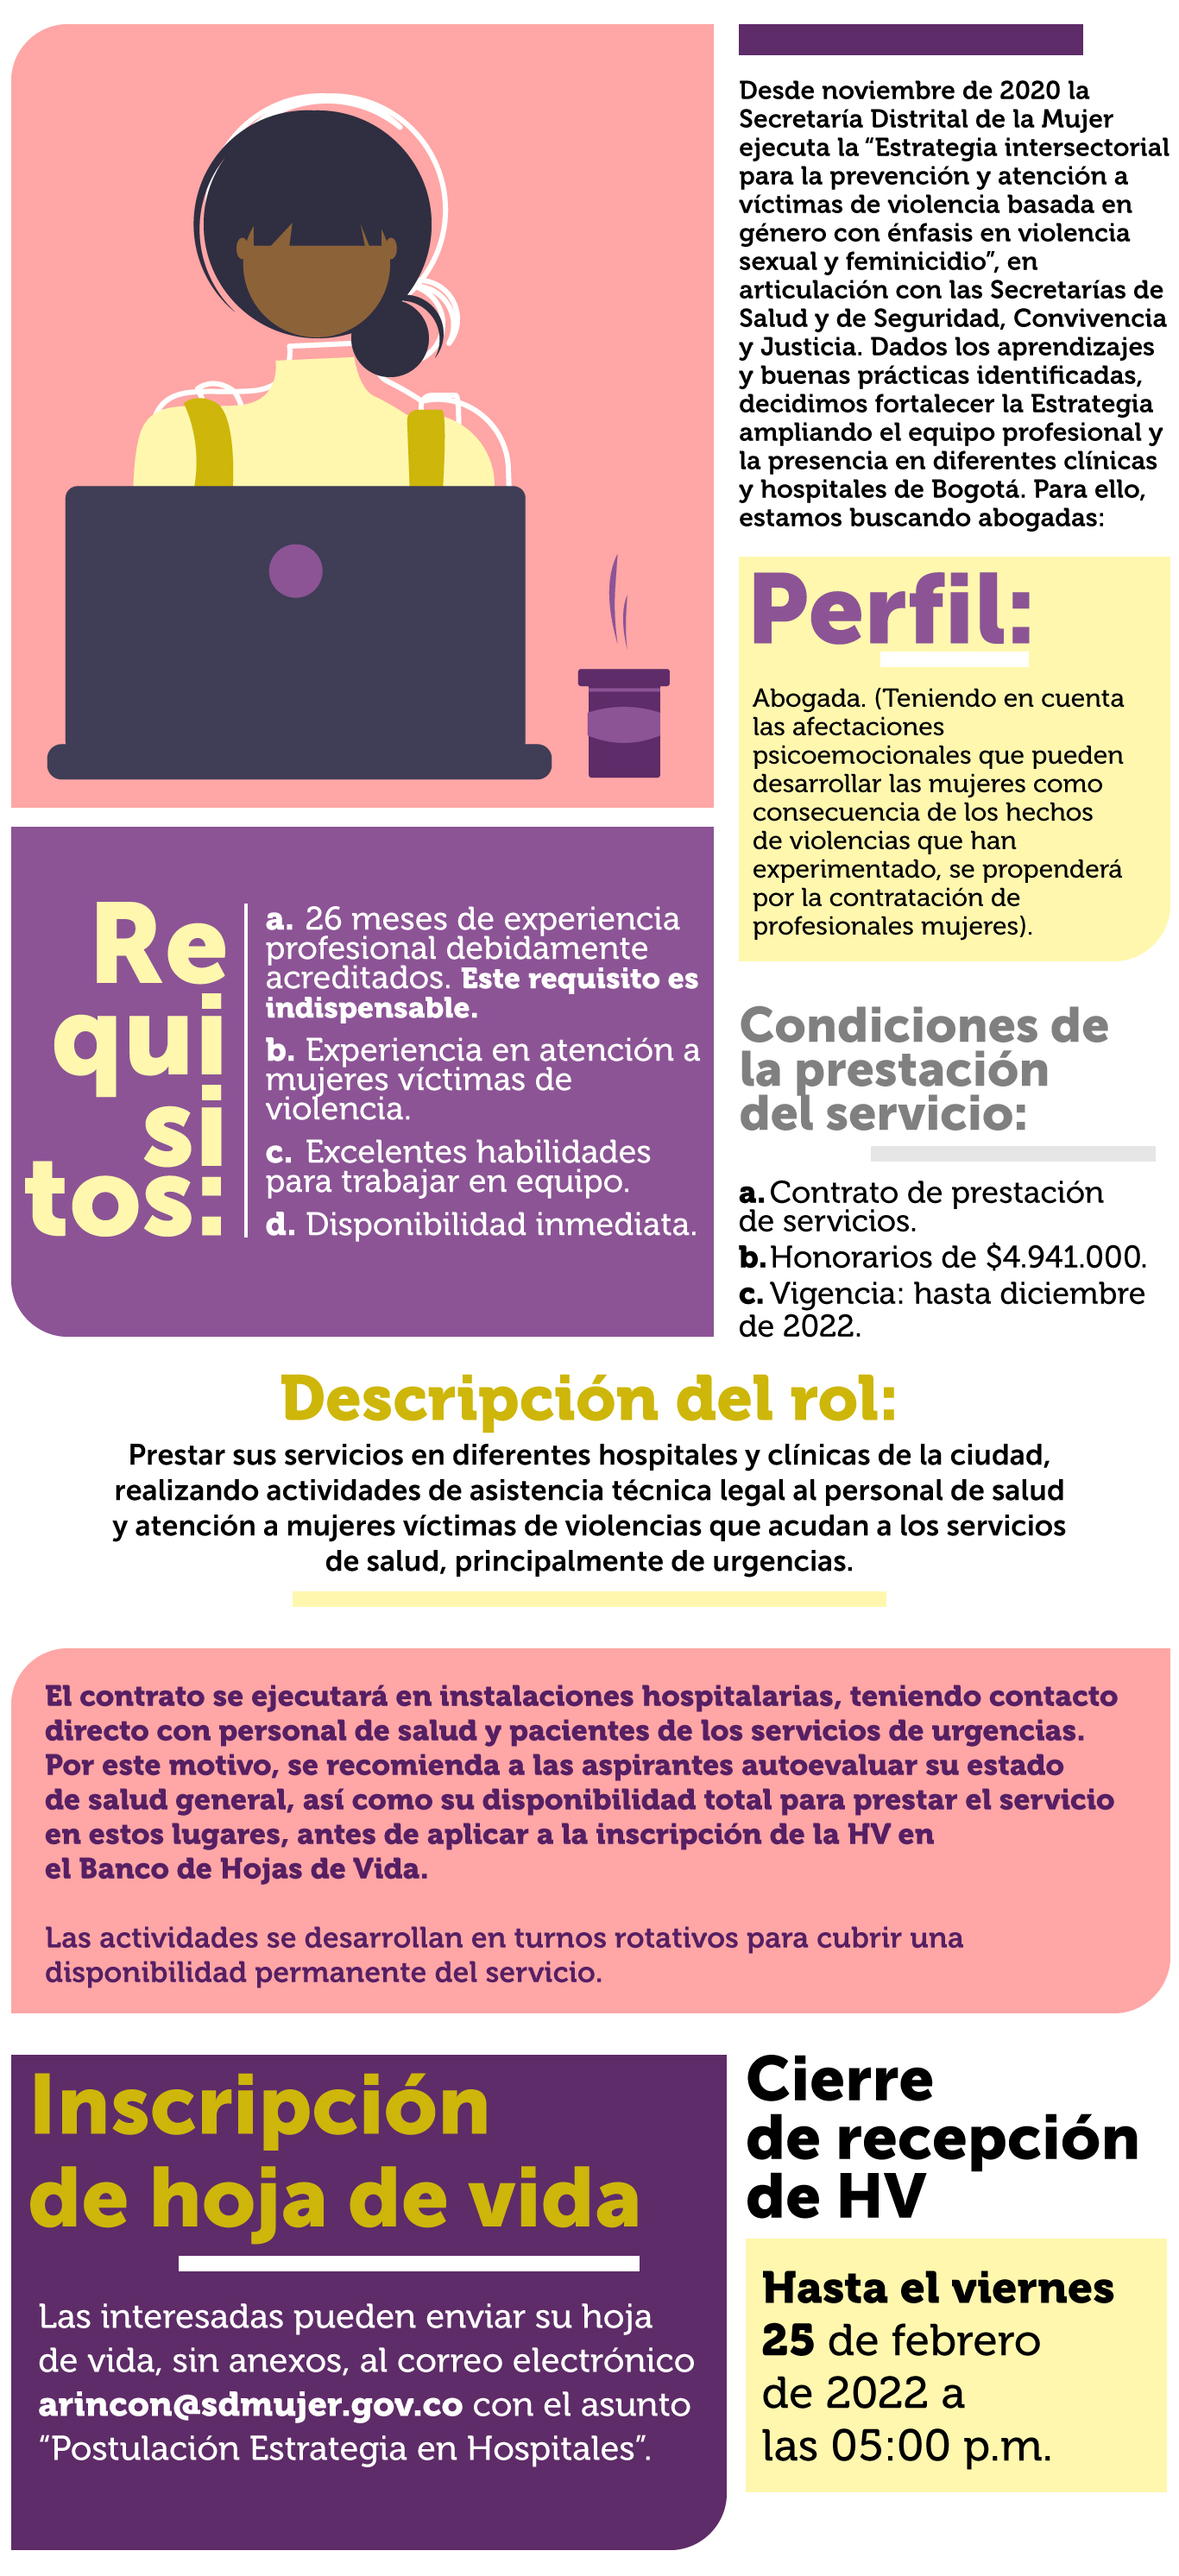 Imagen con información de oferta de empleo para abogadas en derechos humanes de mujeres en espacios hospitalarios